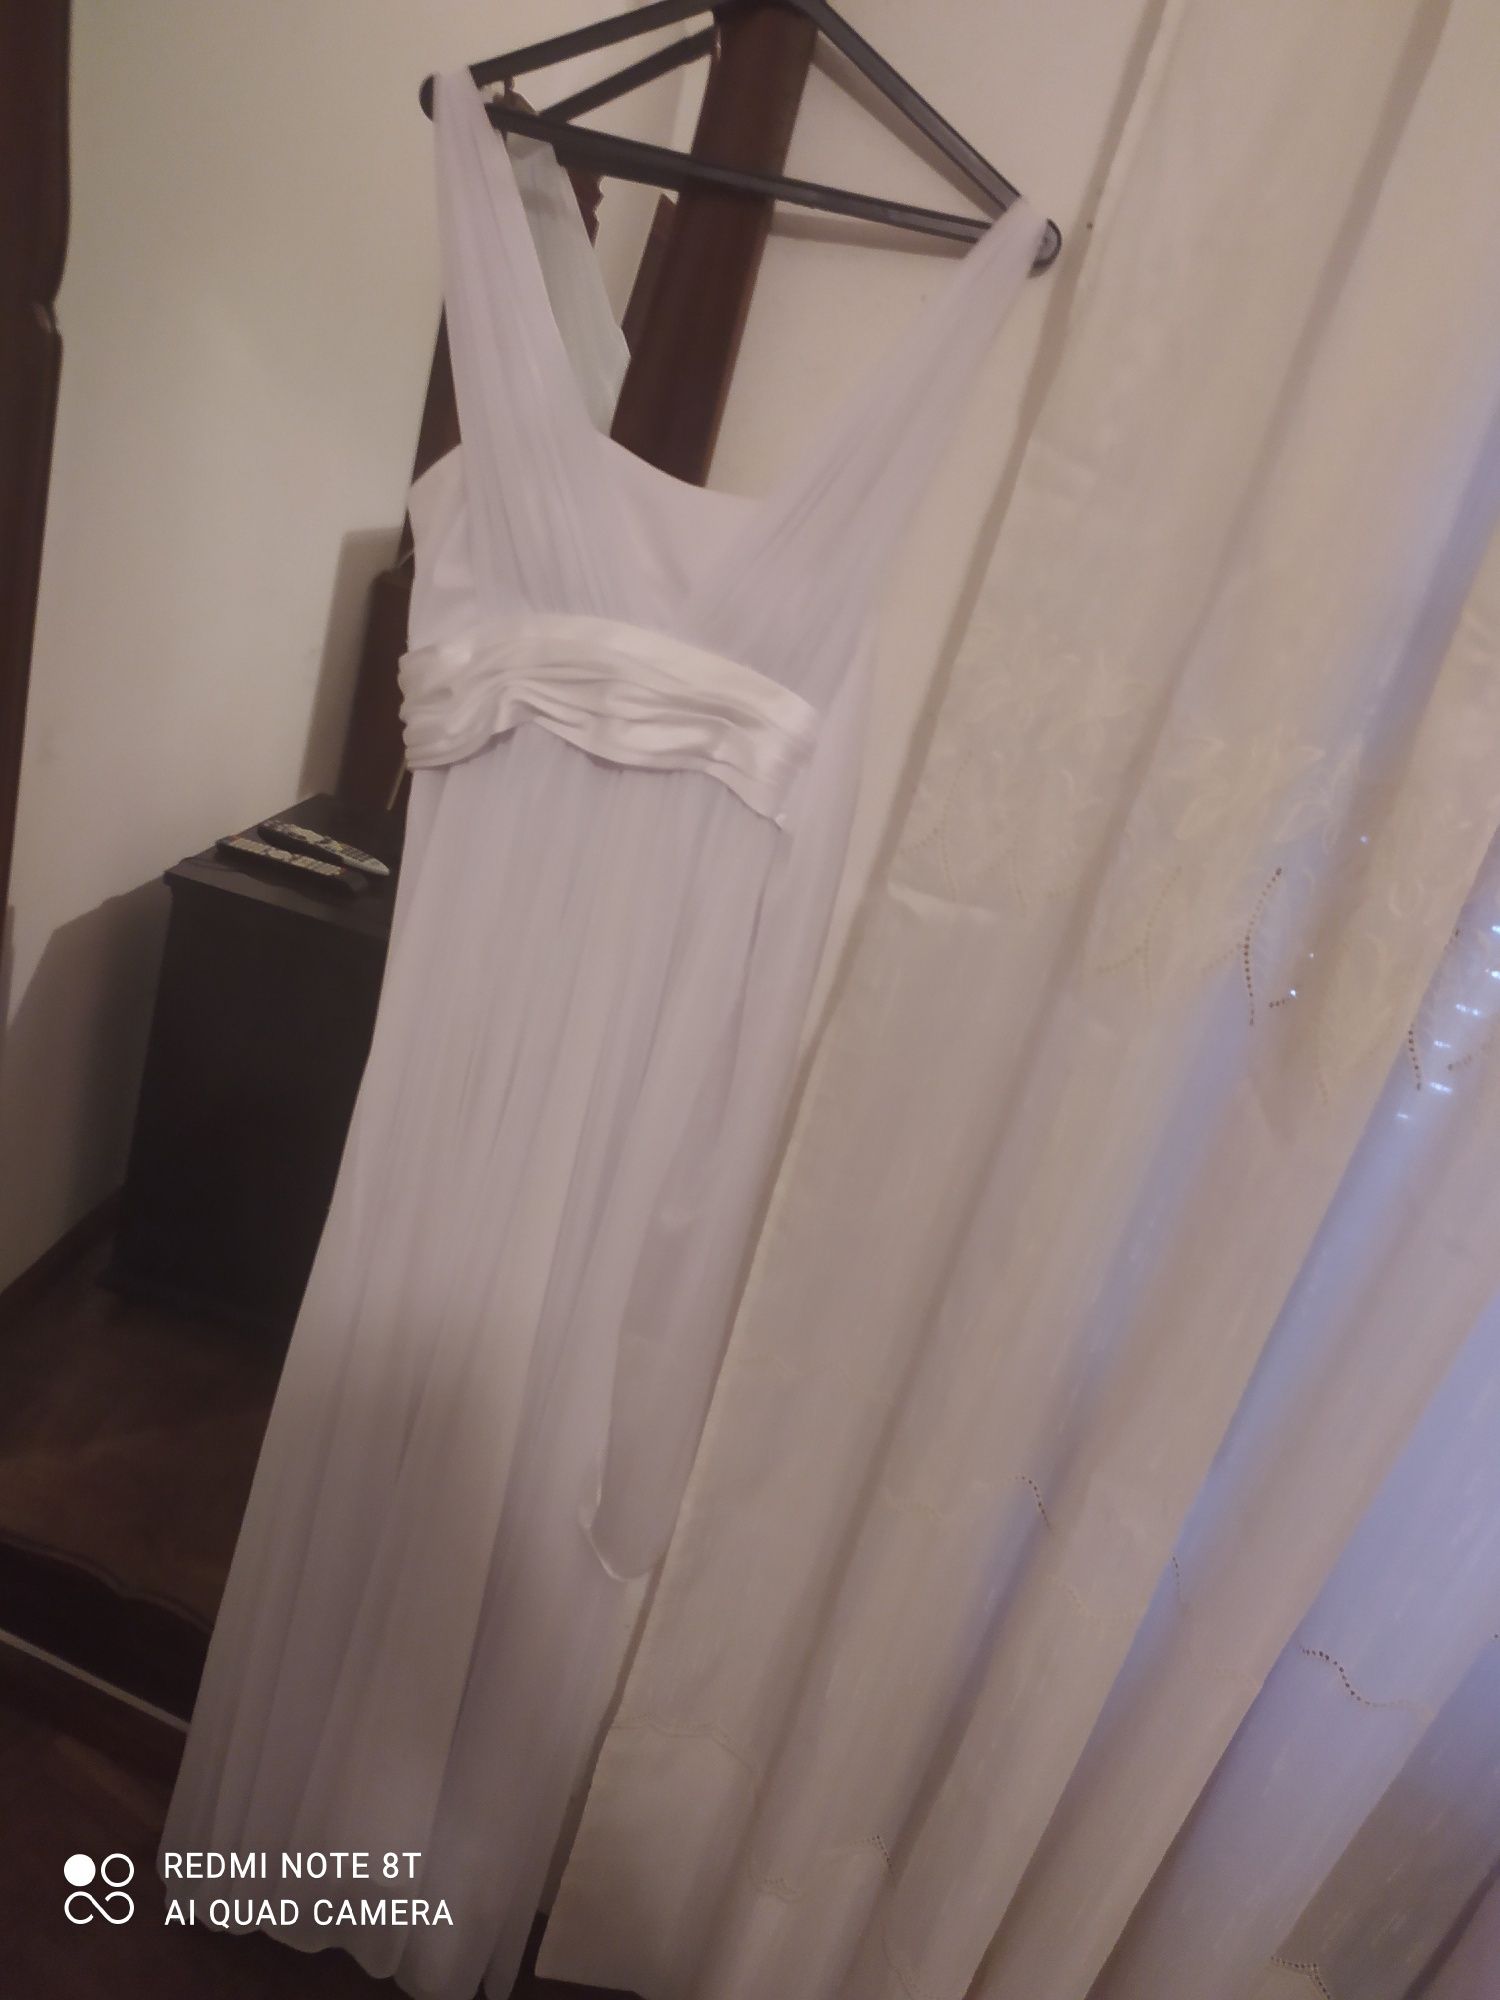 Vestido de noiva simples